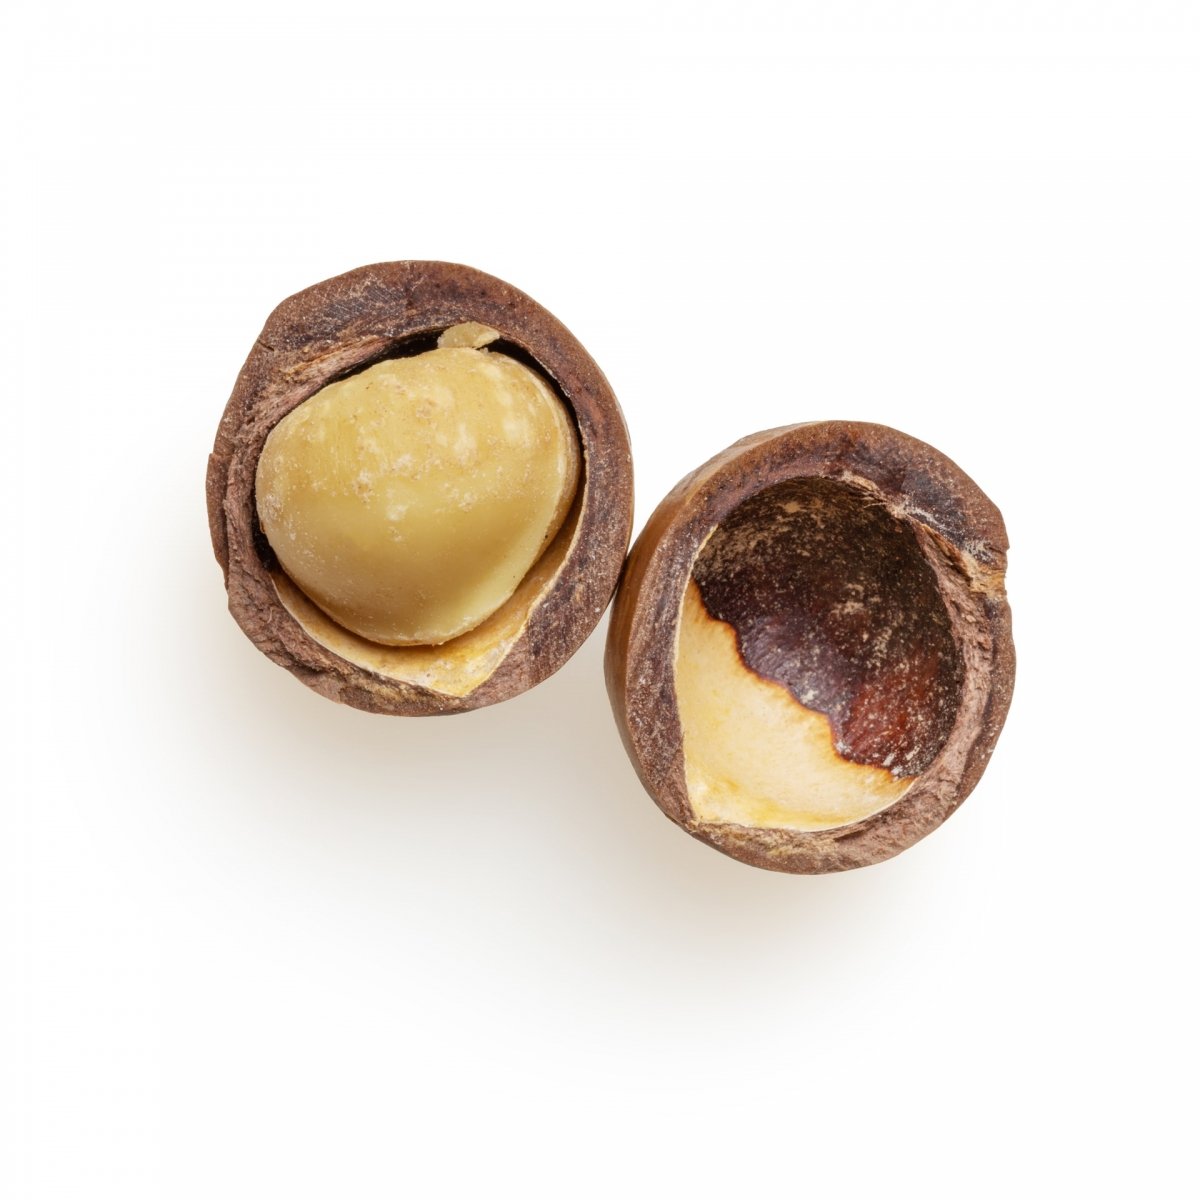 Una nuez de macadamia abierta